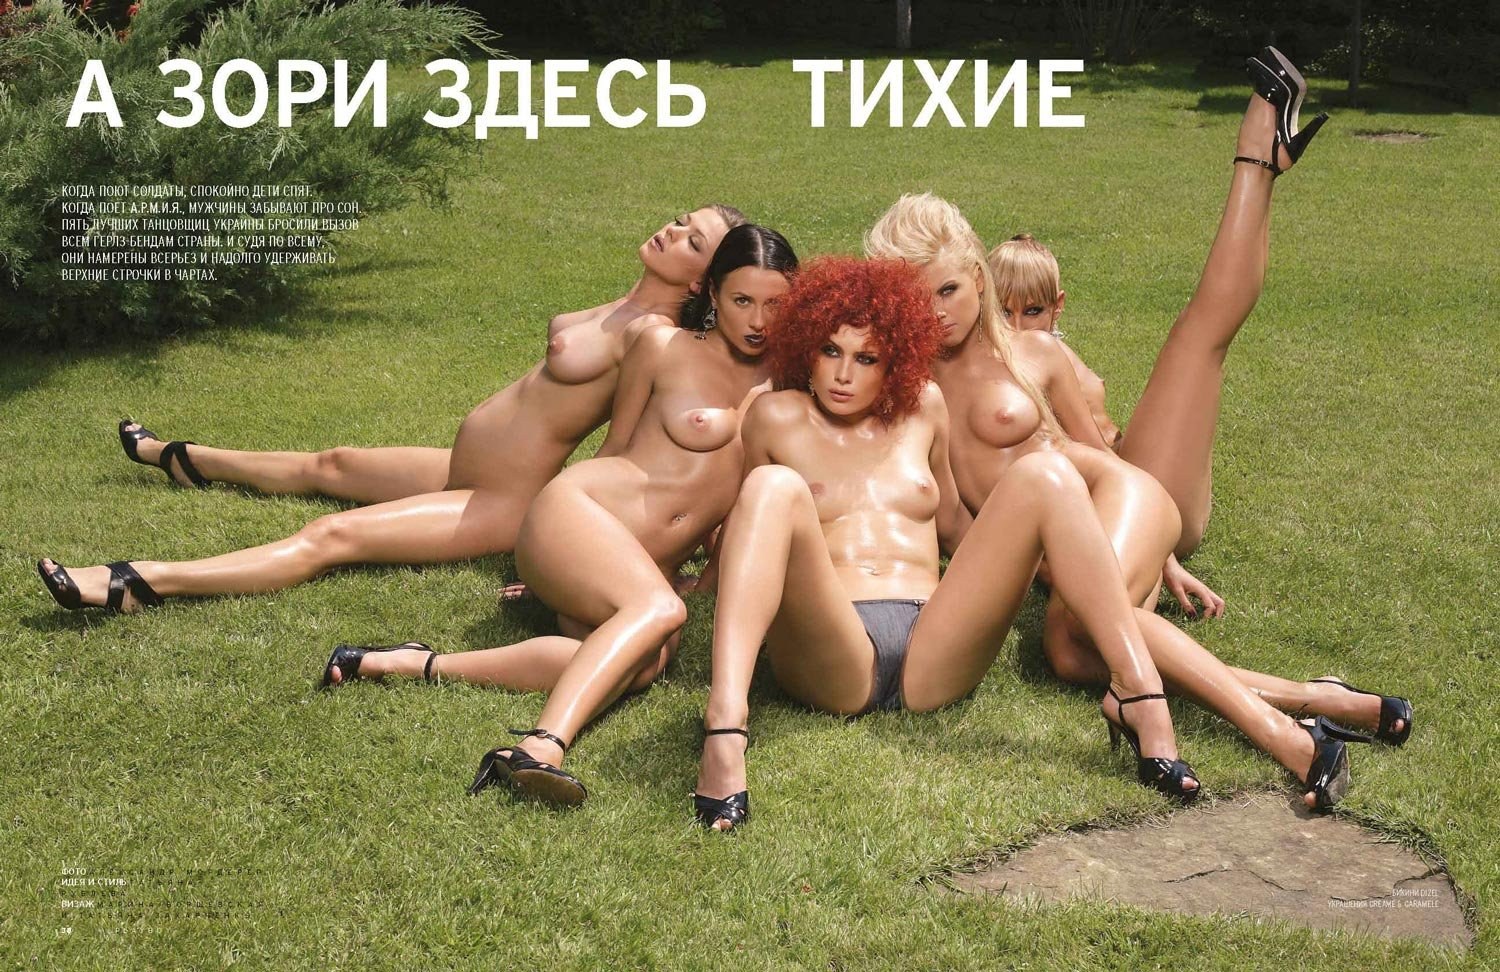 Группа мираж певицы эротика (60 фото) - порно и эротика автонагаз55.рф